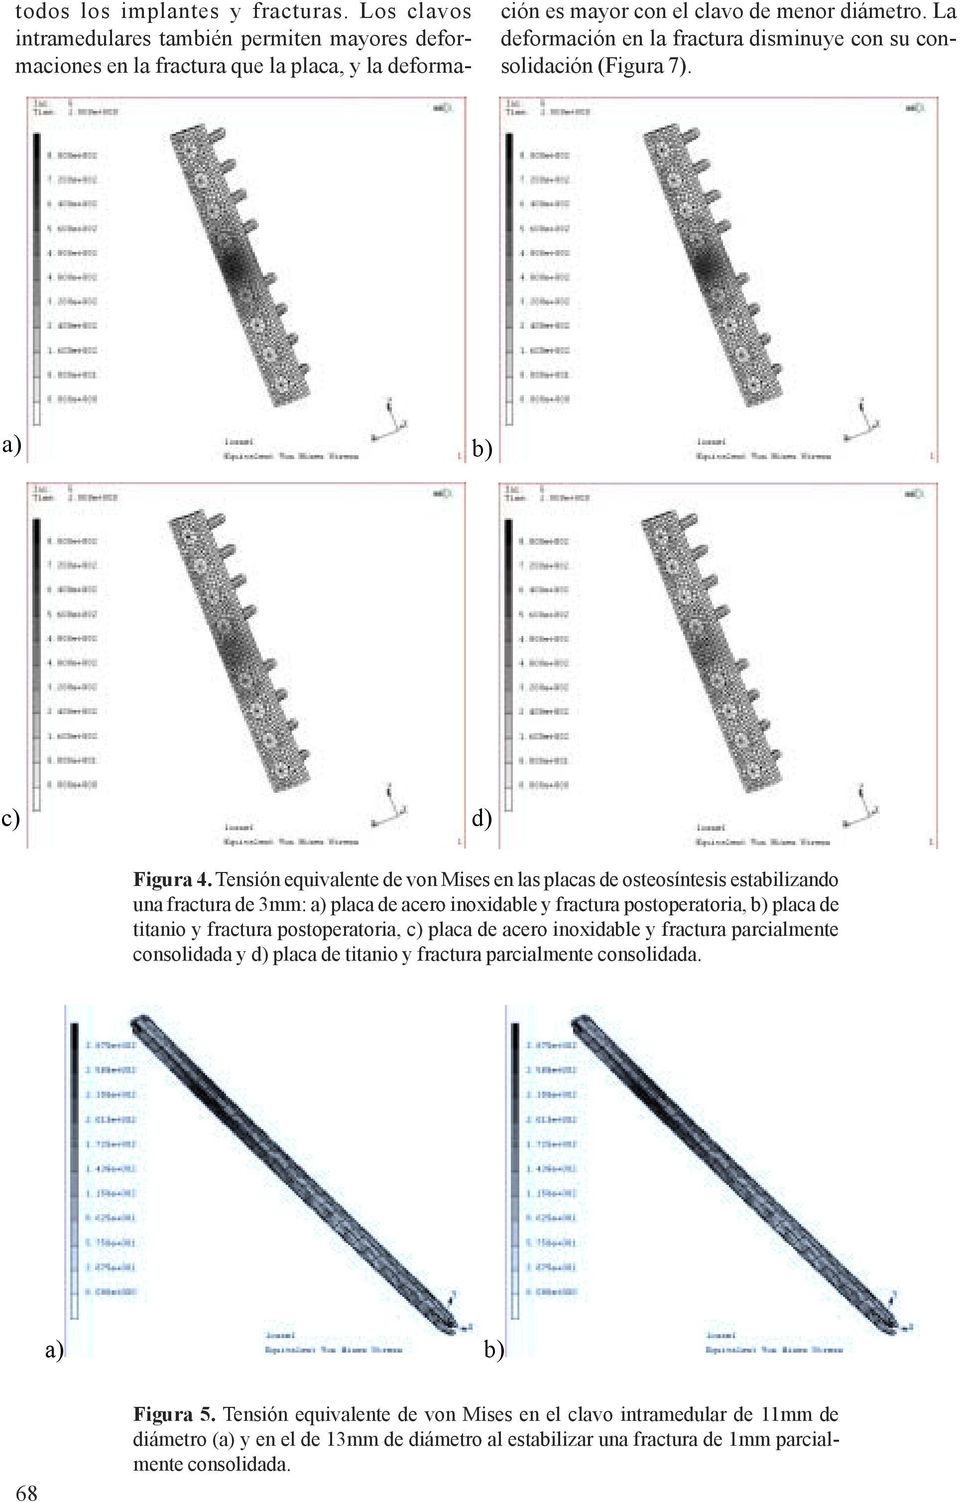 Tensión equivalente de von Mises en las s de osteosíntesis estabilizando una fractura de 3mm: a) de acero inoxidable y fractura postoperatoria, b) de titanio y fractura postoperatoria, c)